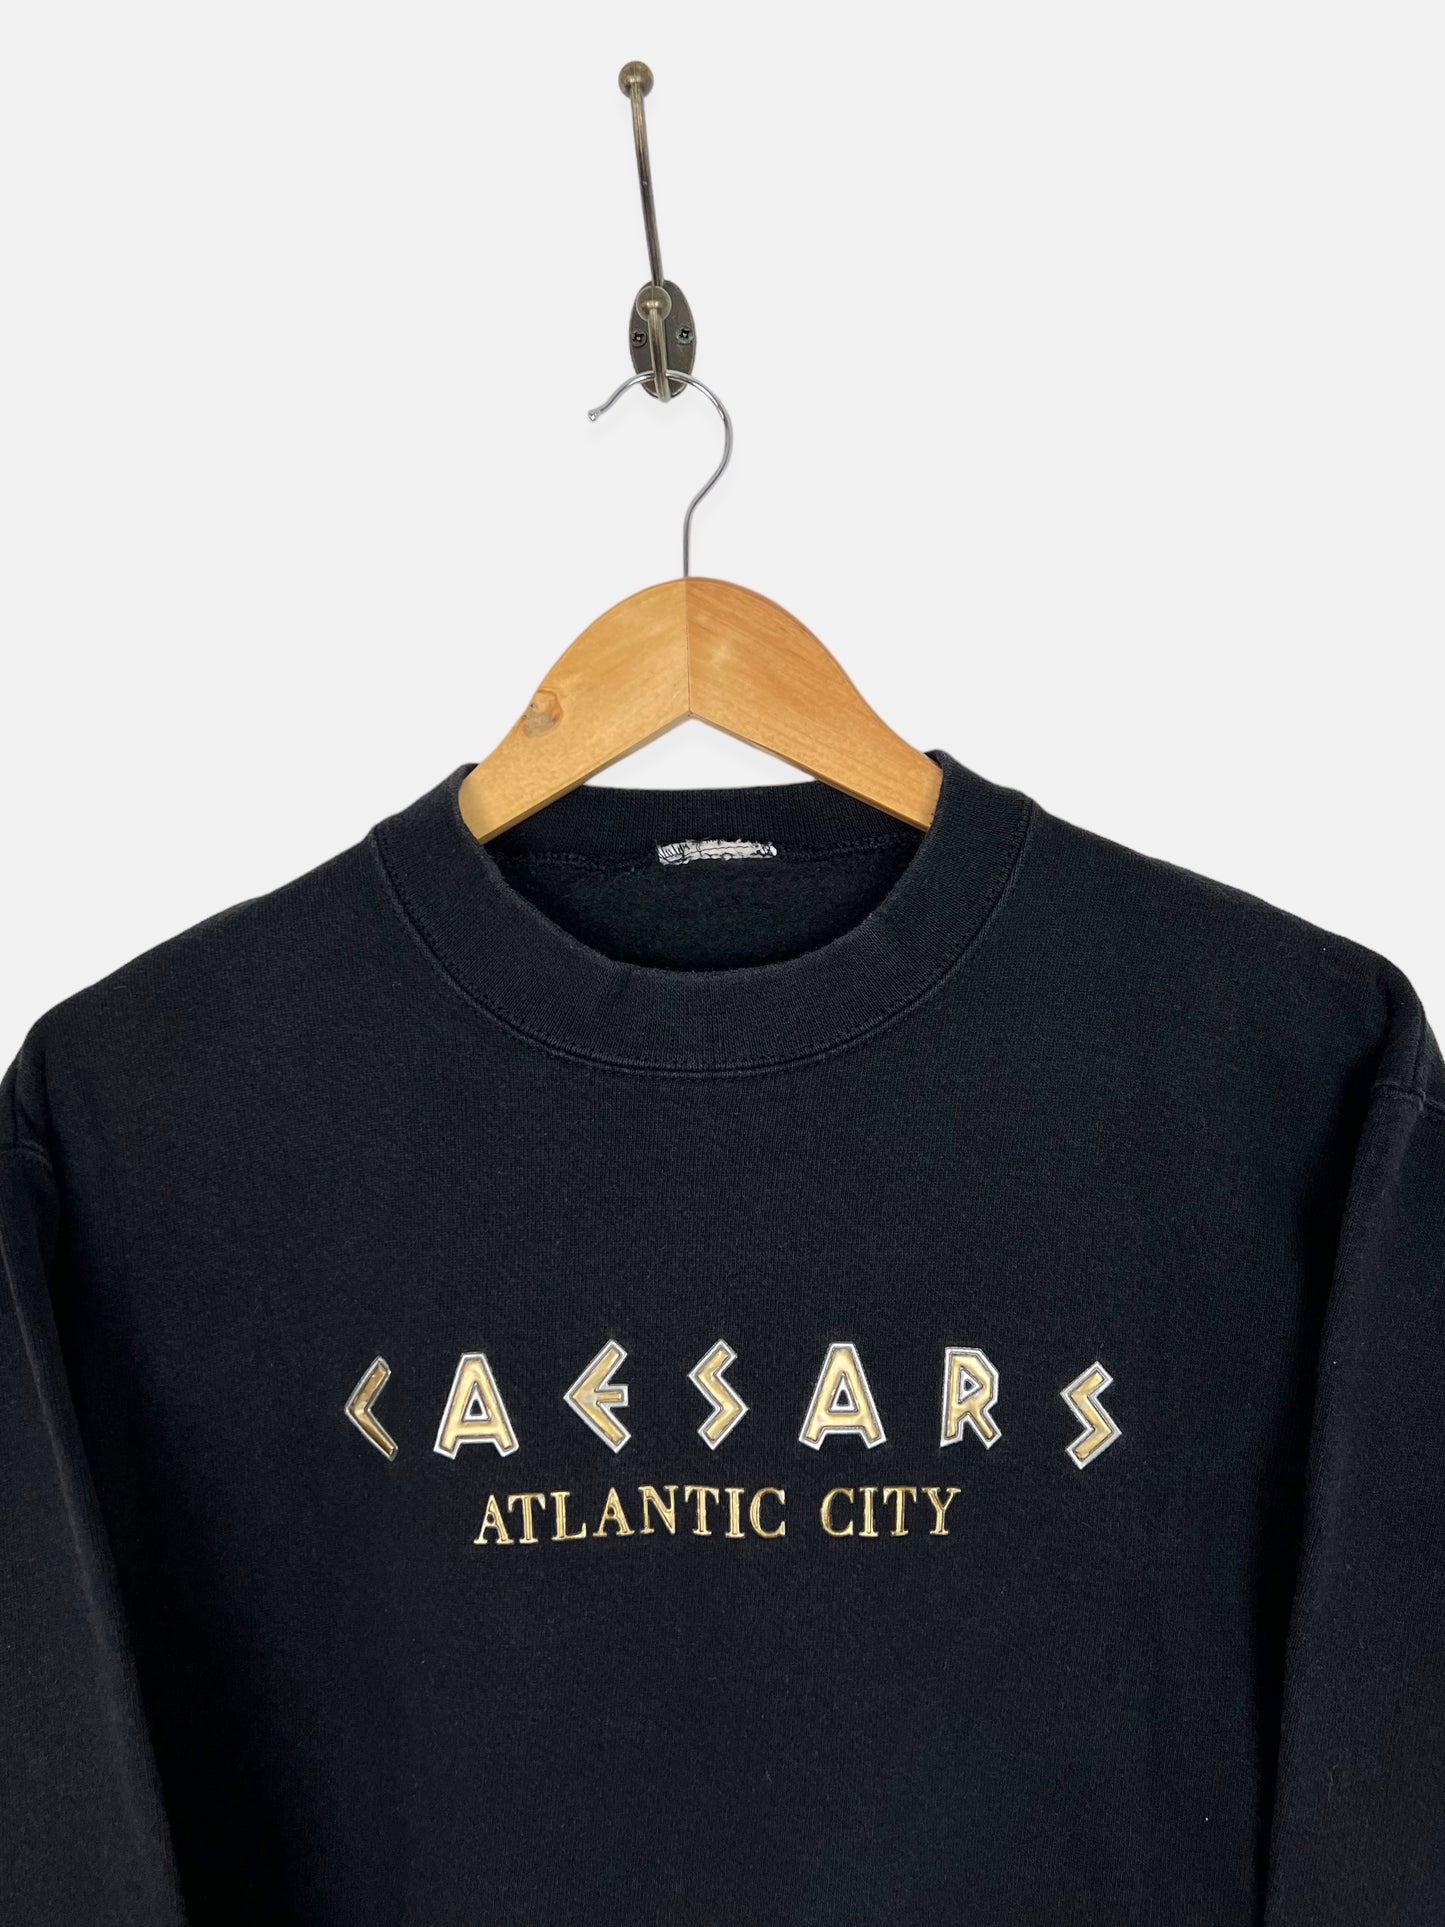 90's Caesars Atlantic City Embroidered Vintage Sweatshirt Size 6